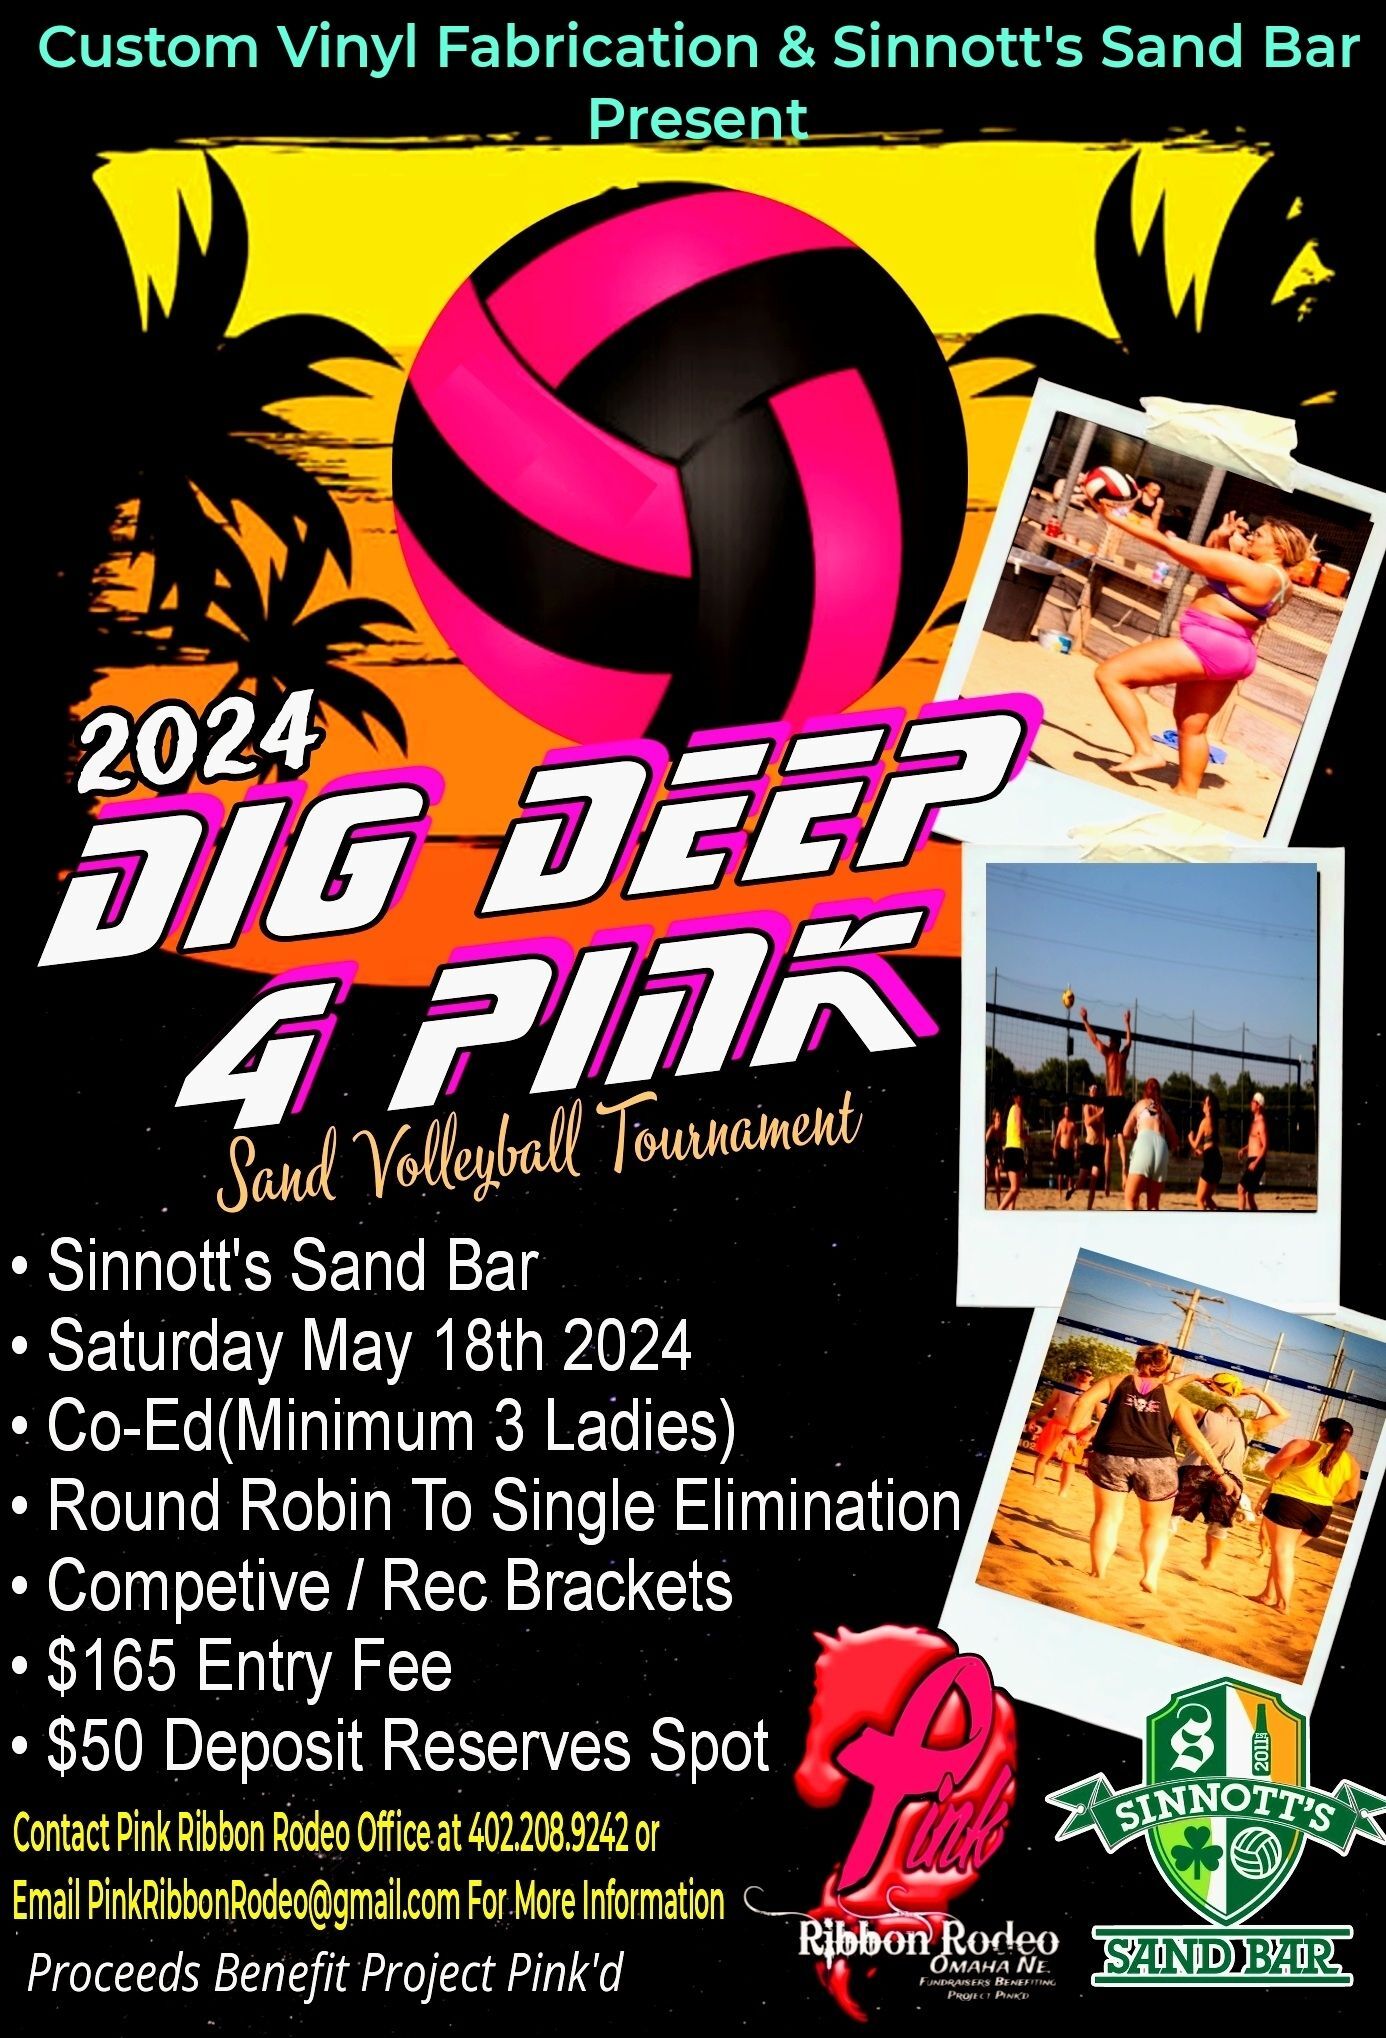 Custom Vinyl Fabrication & Sinnott's Sand Bar Present - The 2024 Dig Deep 4 Pink Sand Volleyball Tournament